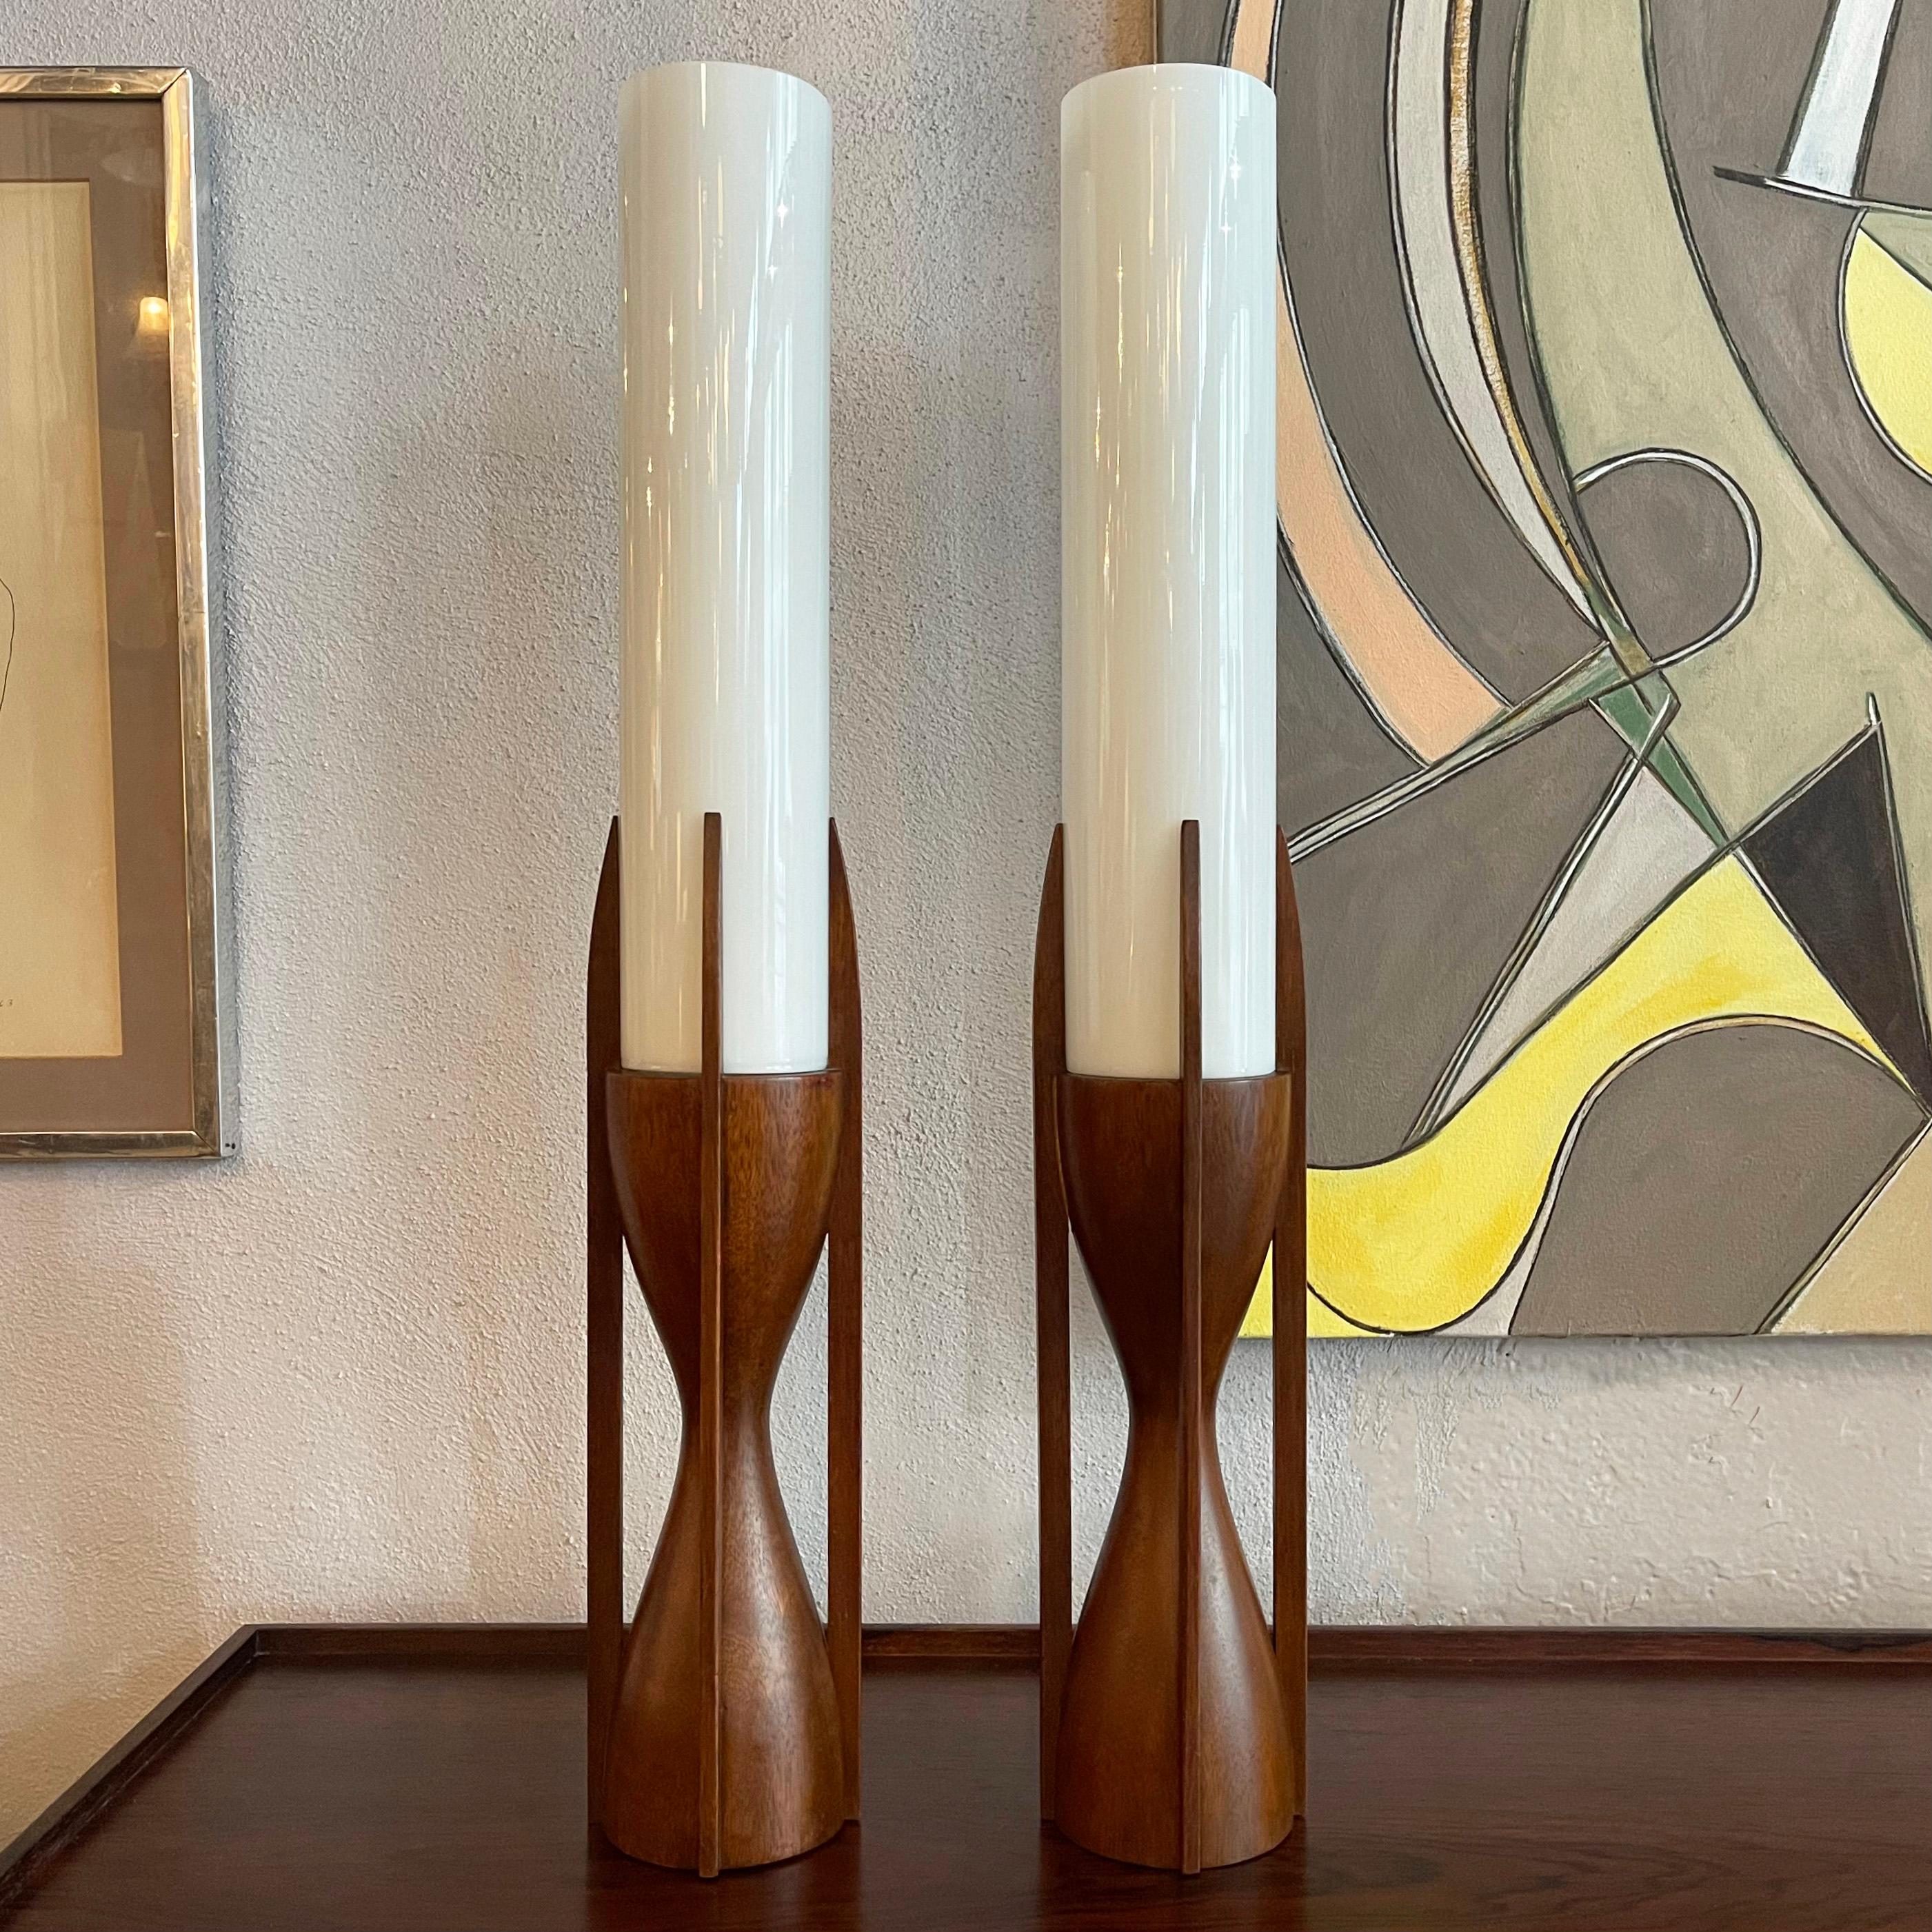 Beeindruckende Paar Mitte des Jahrhunderts moderne, architektonische Tischlampen von Byron Botker für Modeline Lamp Co. verfügen über skulpturale, hourlgass, Walnuss Basen mit 14 Zoll hoch Milchglas Zylinder Schirme passen in sie. Die Lampen eignen